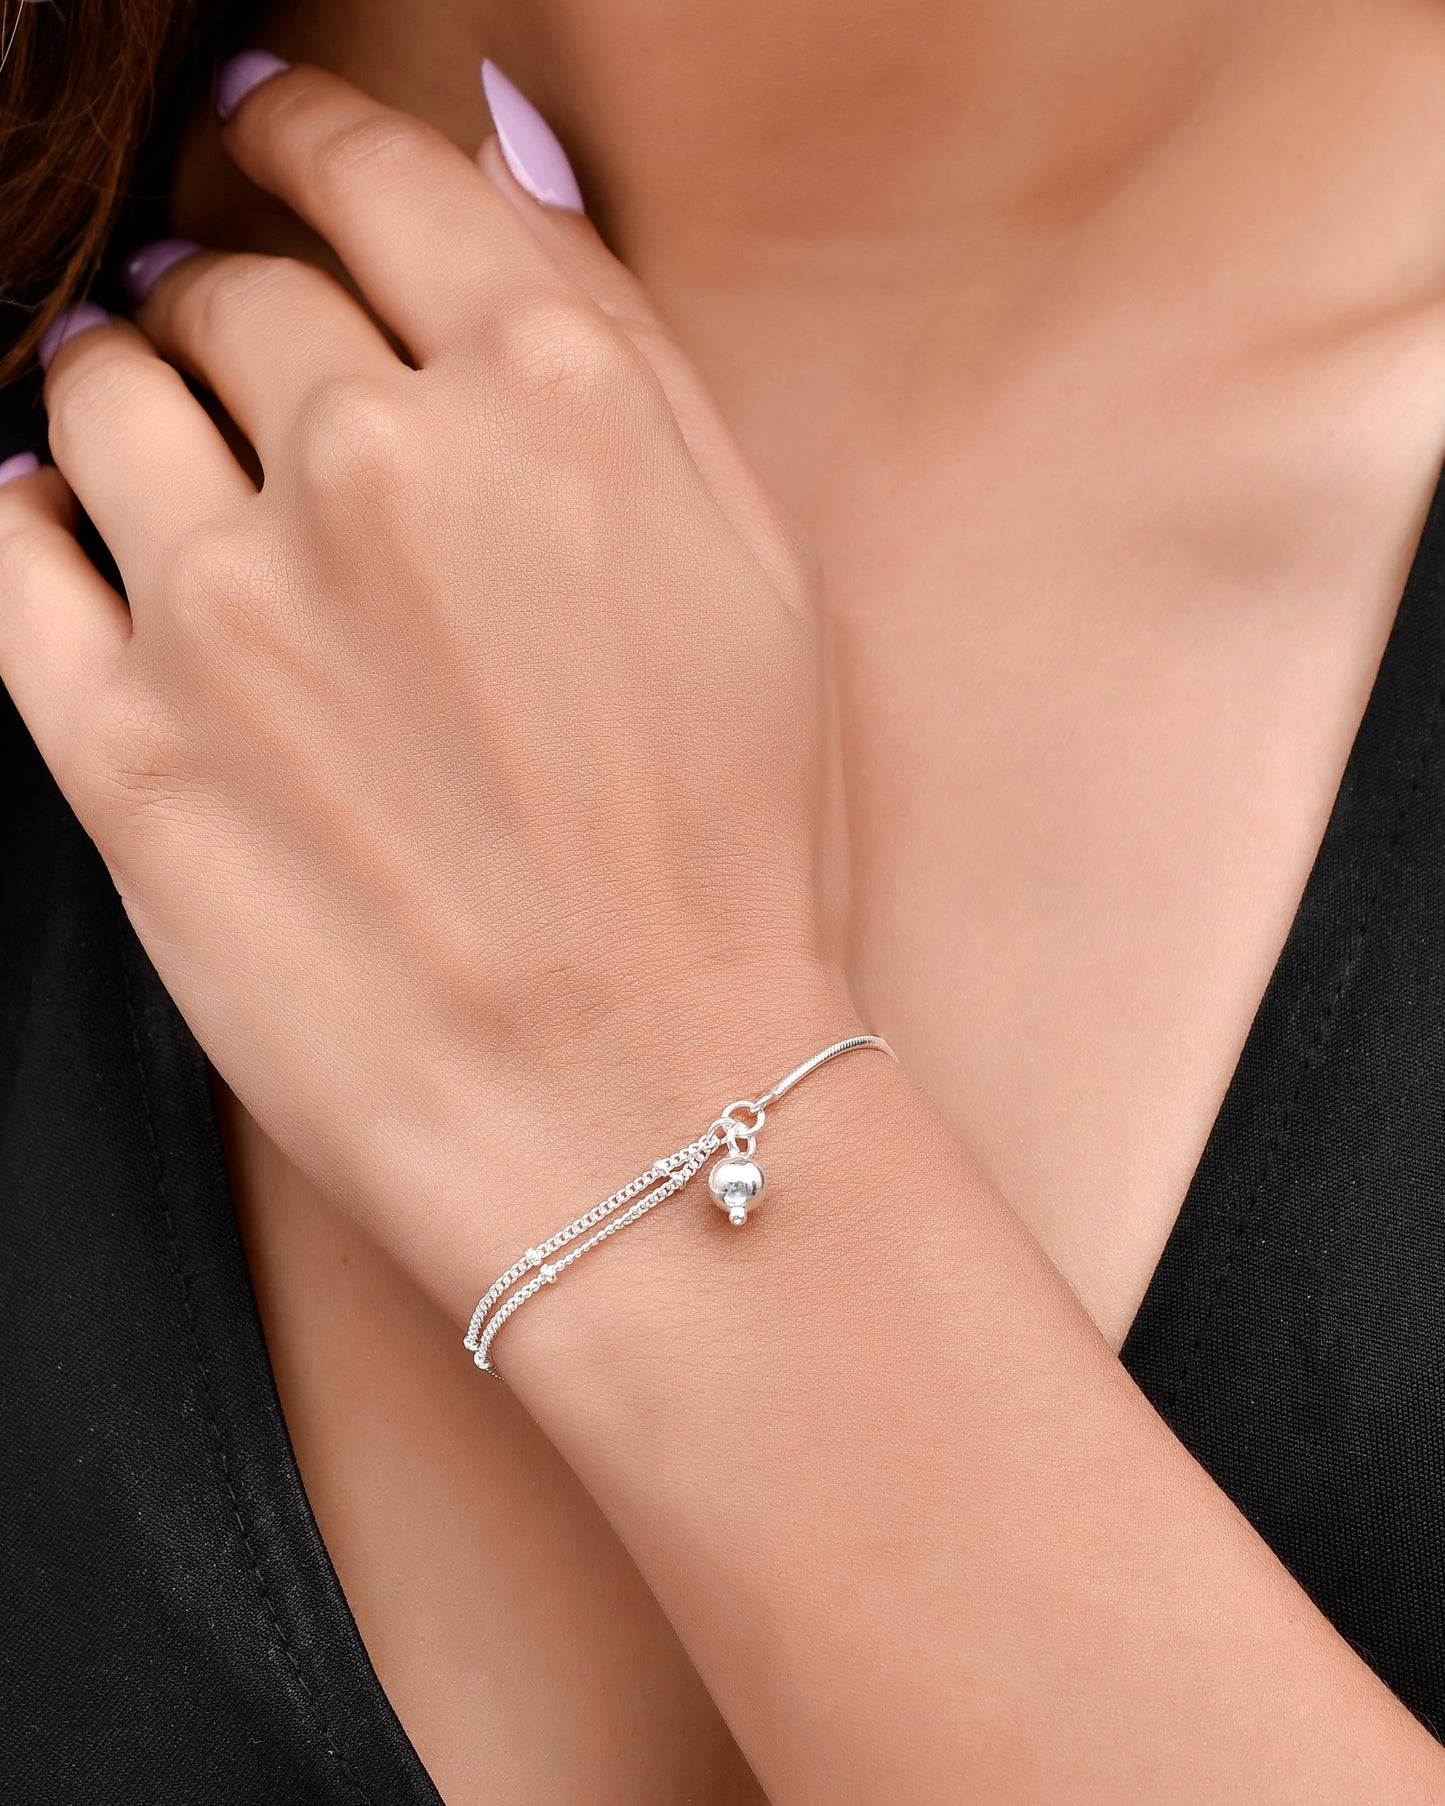 cute silver bracelet for girls & women